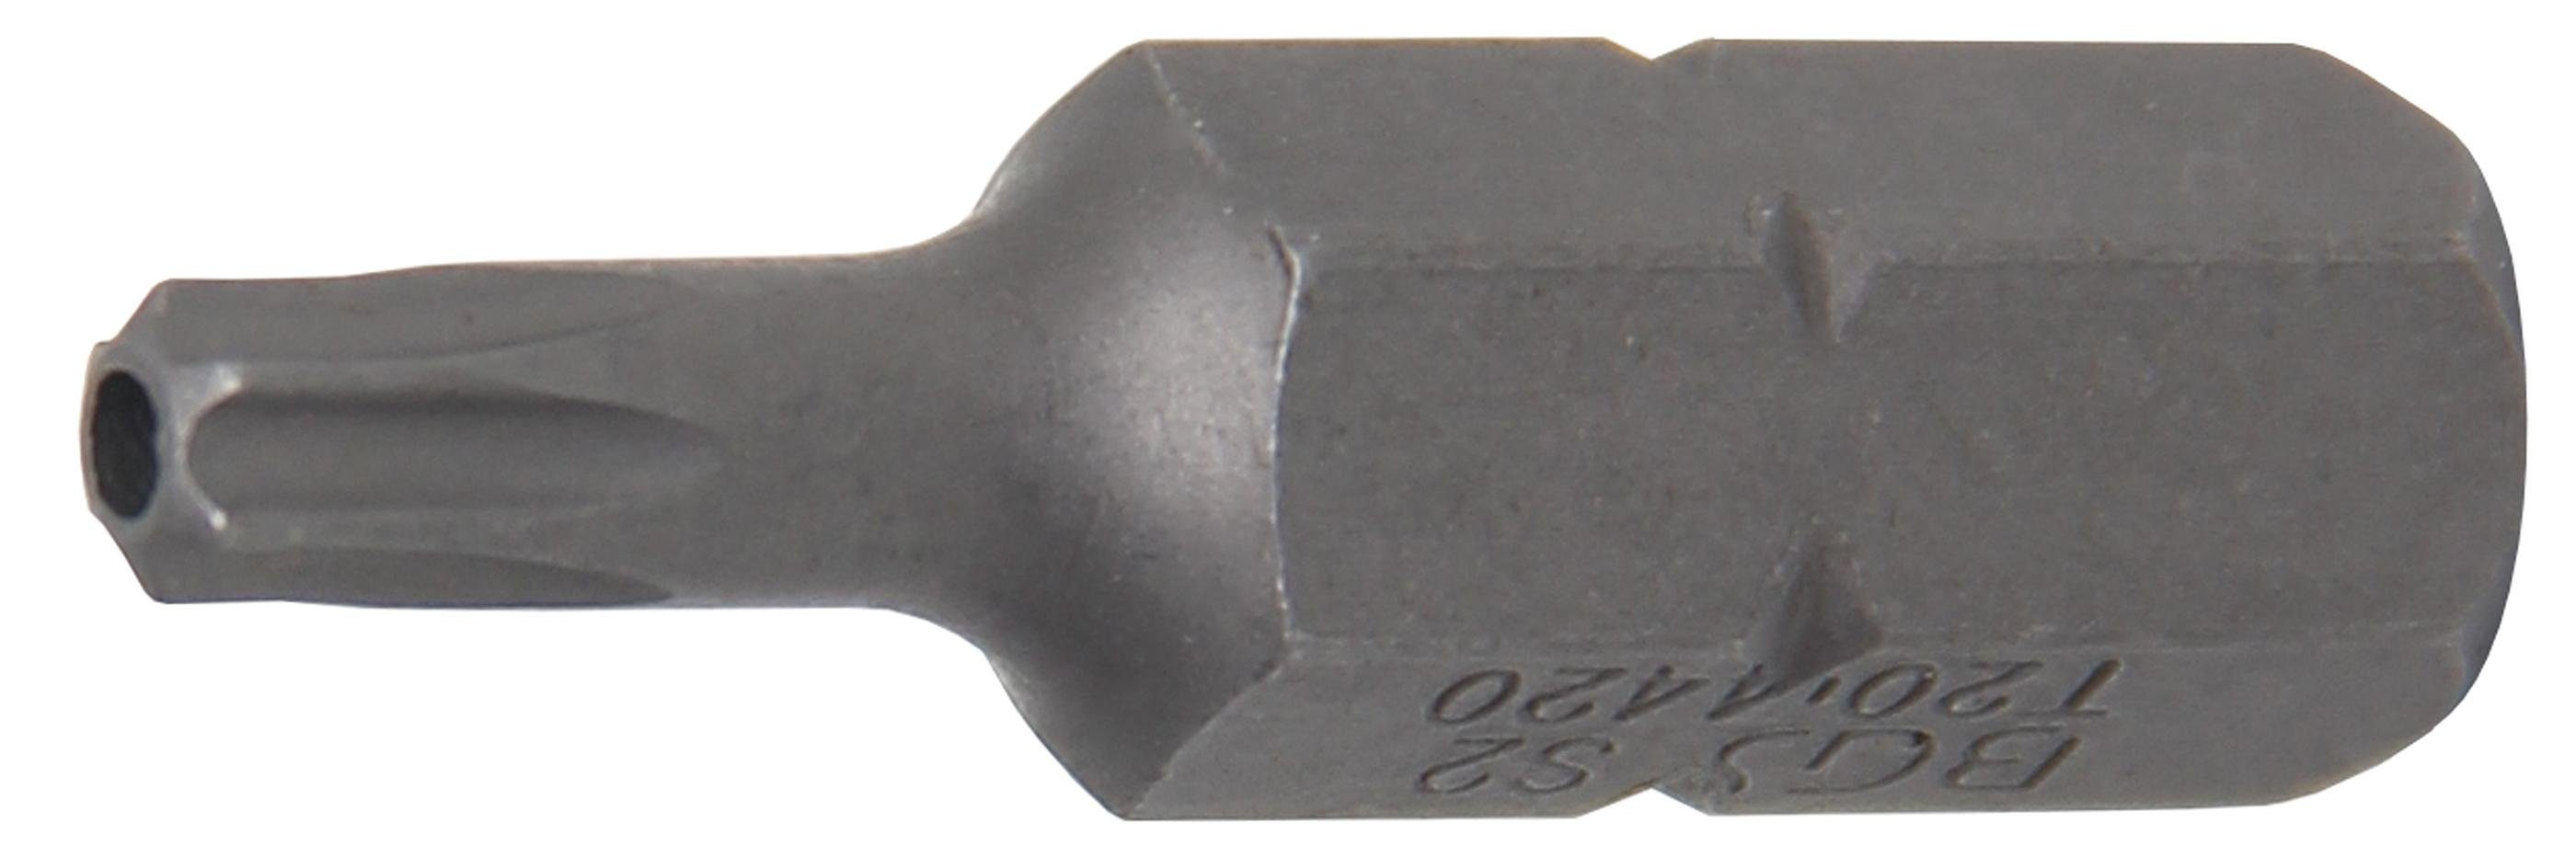 BGS technic Bit-Schraubendreher Bit, Länge 30 mm, Antrieb Außensechskant 8 mm (5/16), T-Profil (für Torx) mit Bohrung T20